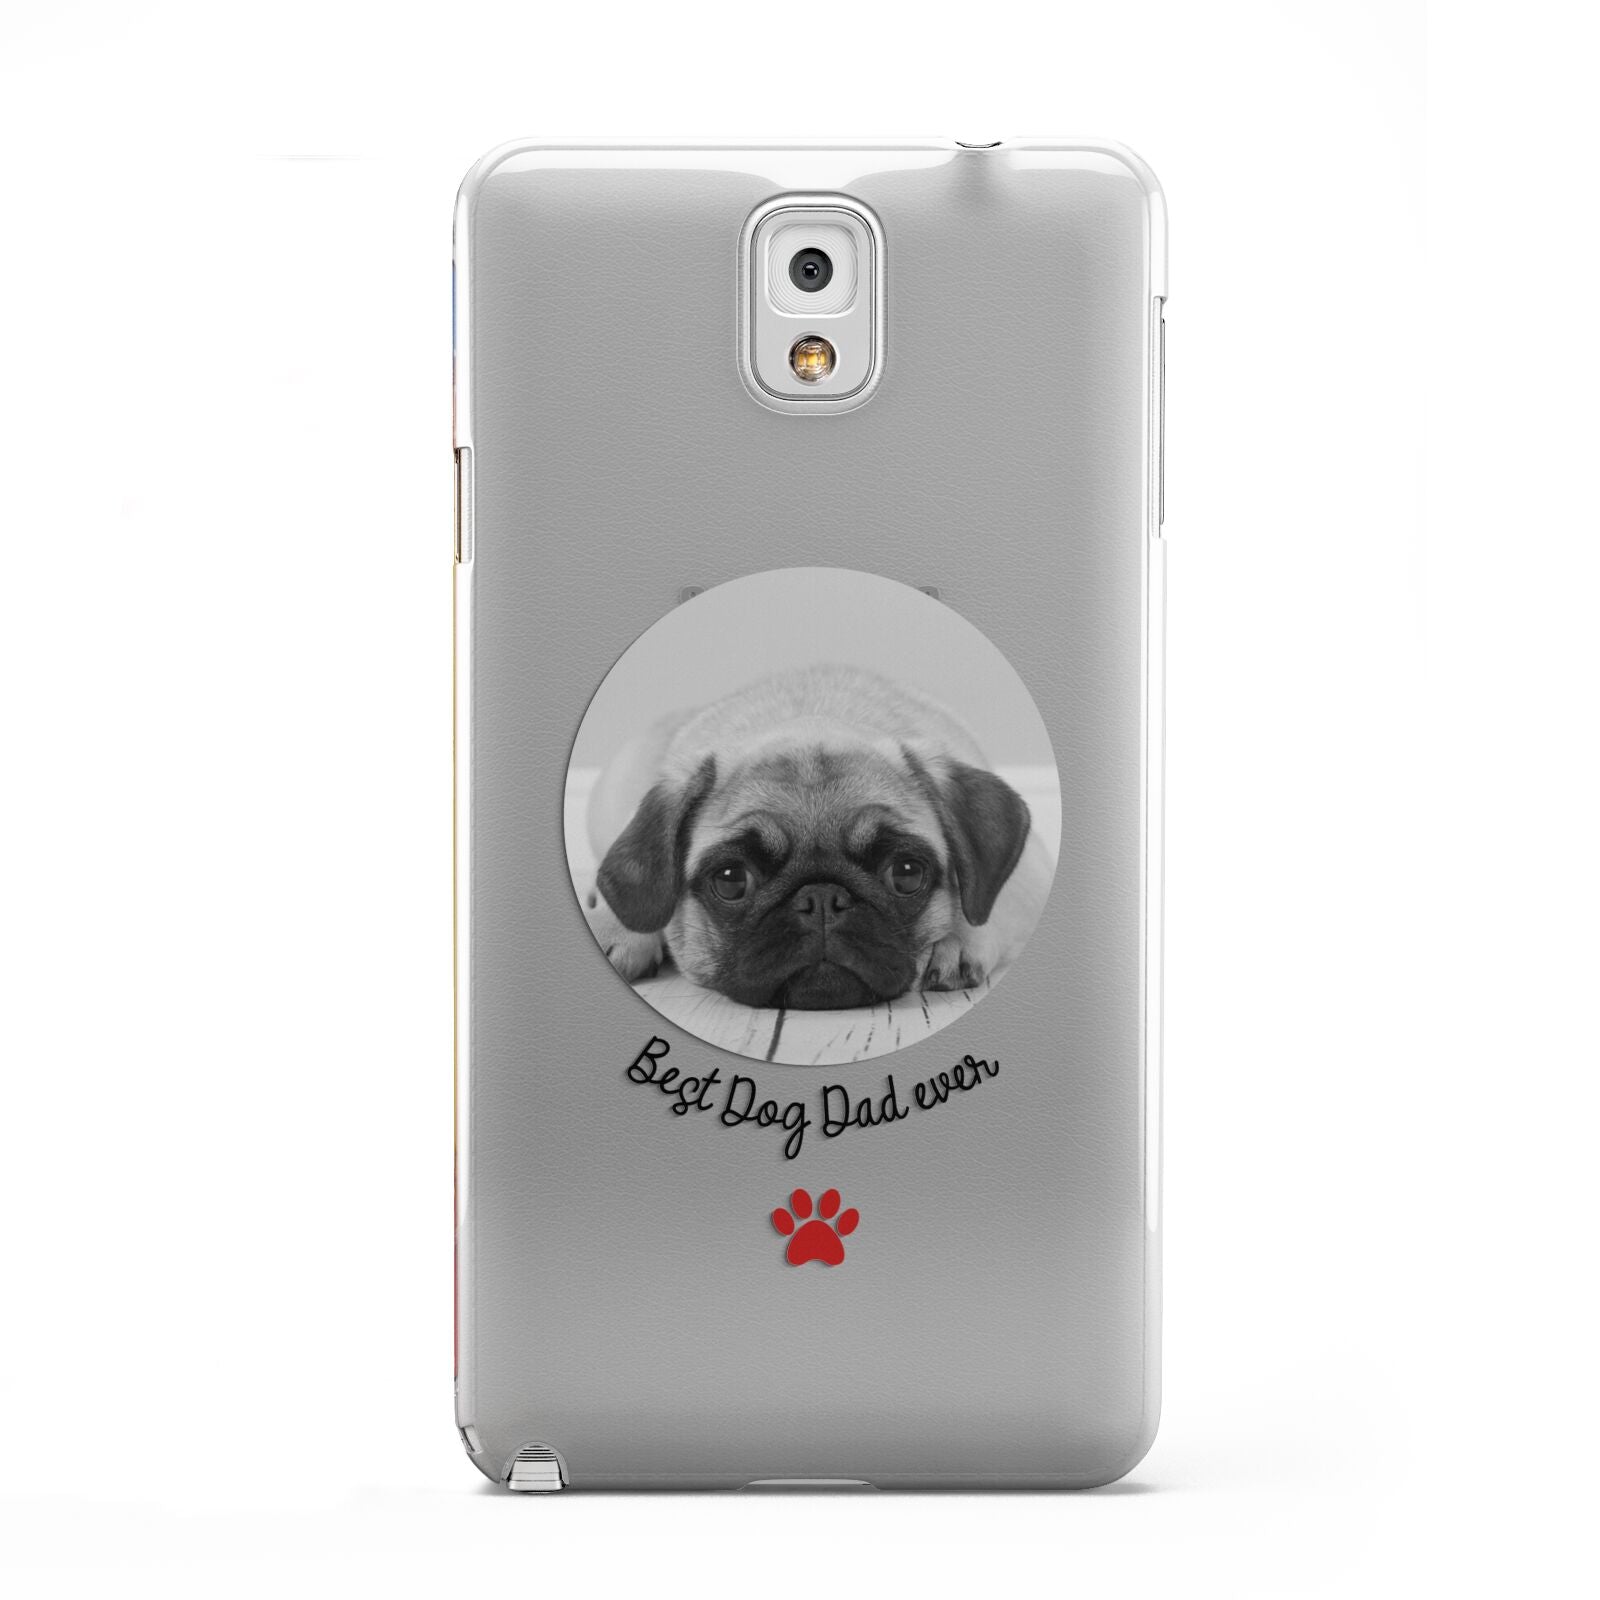 Best Dog Dad Ever Photo Upload Samsung Galaxy Note 3 Case